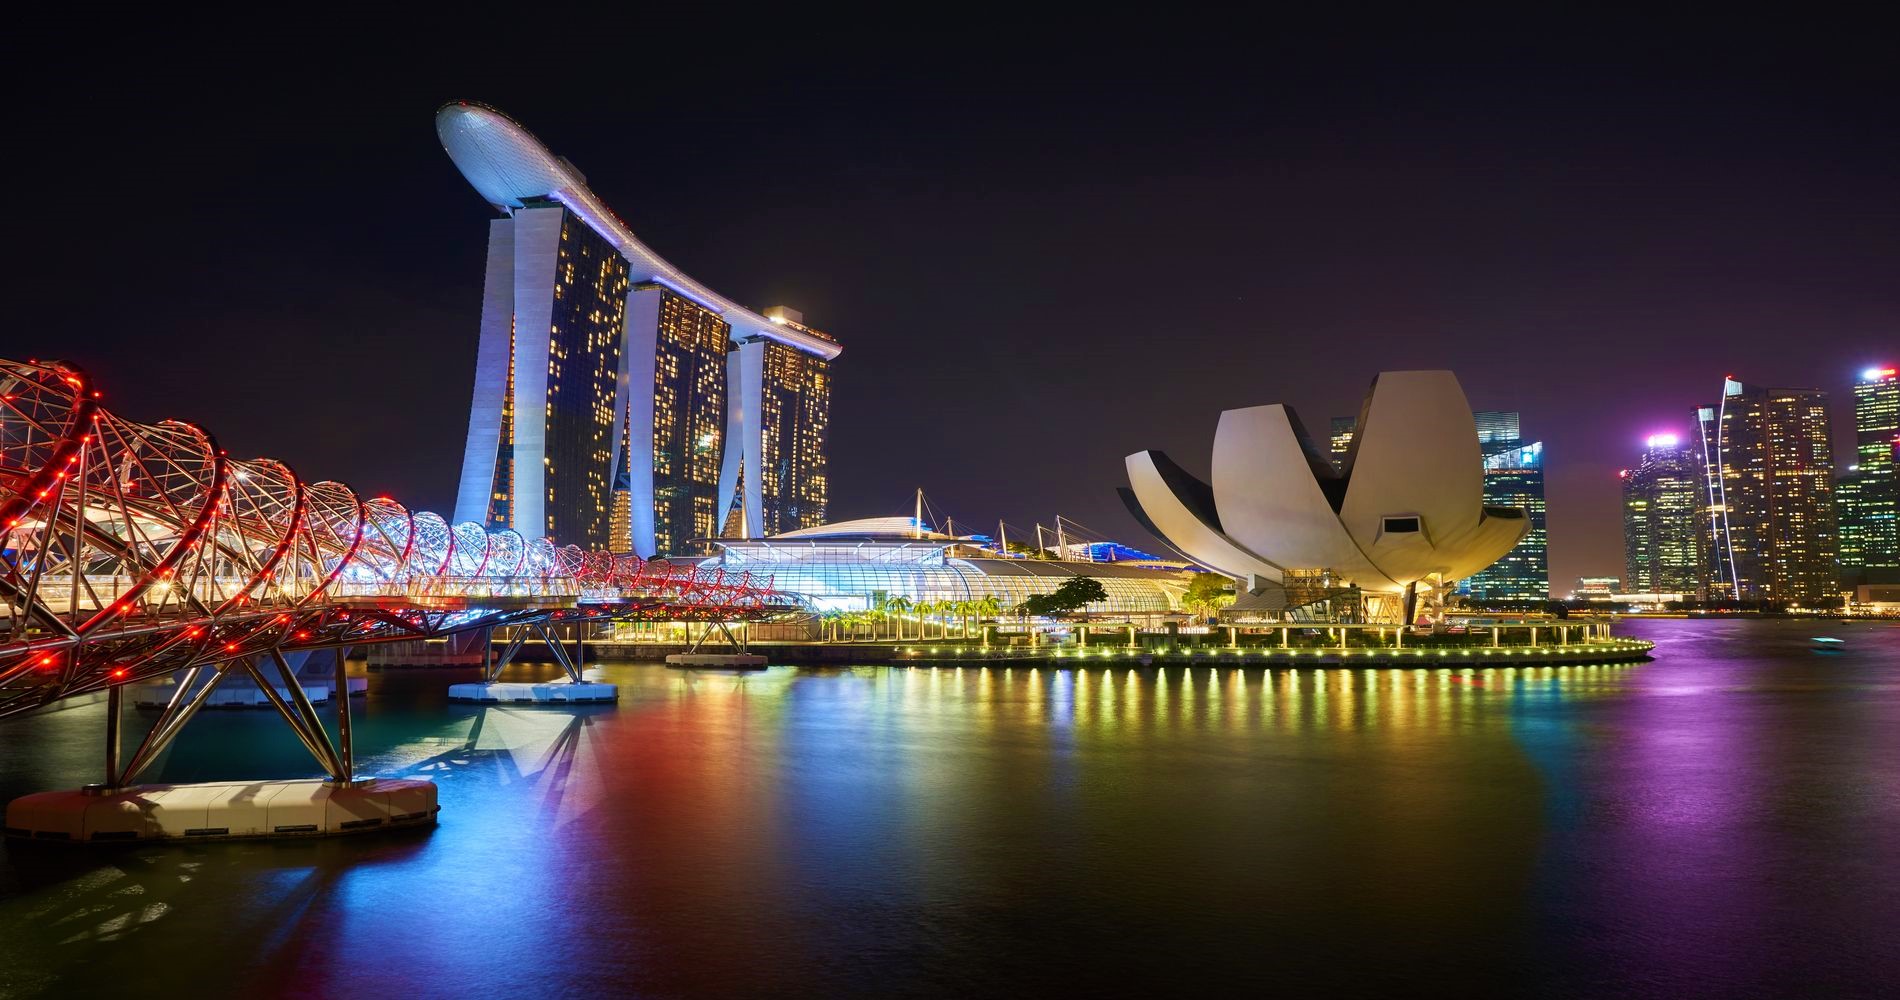 Background Image_Singapore